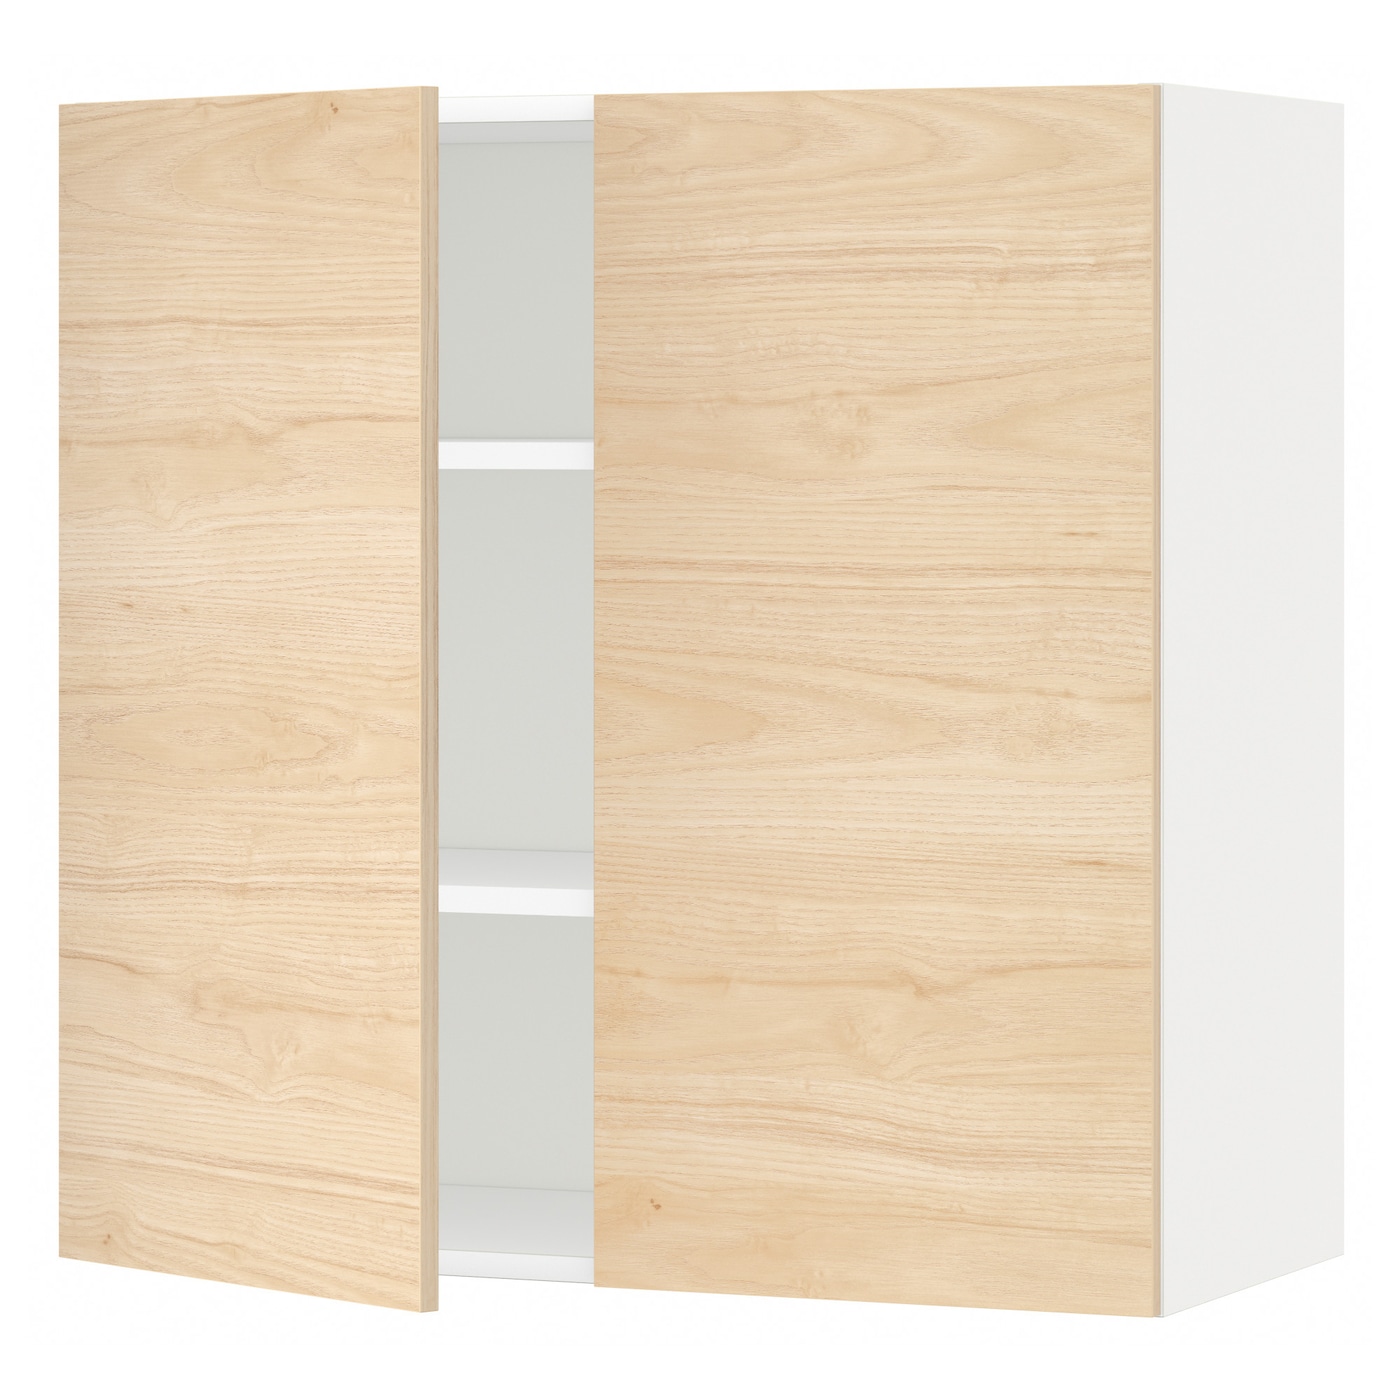 Навесной шкаф с полкой - METOD IKEA/ МЕТОД ИКЕА, 80х80 см, белый/под беленый дуб